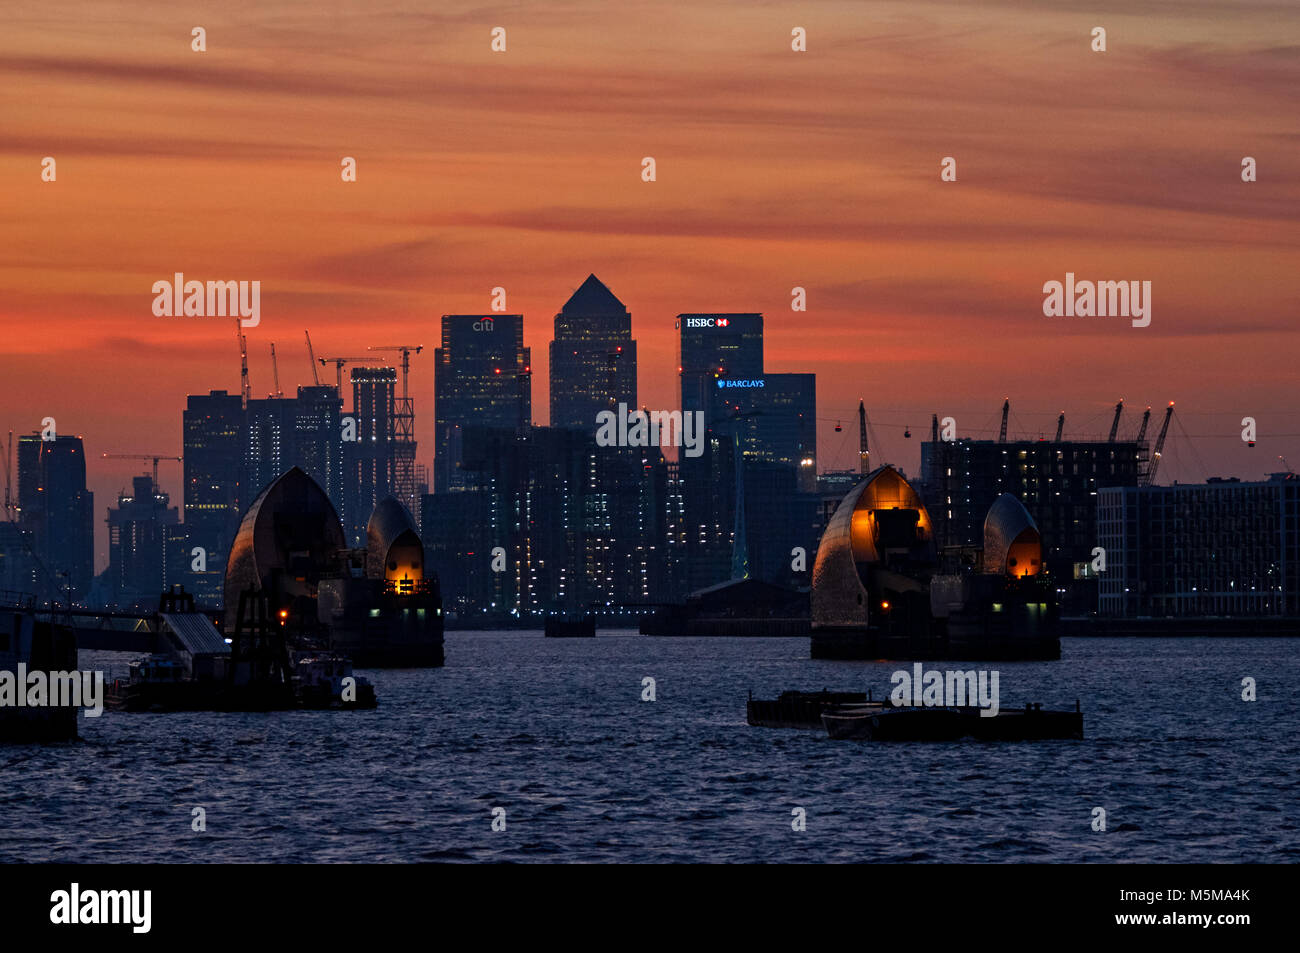 Canary Wharf und Thames Barrier bei Sonnenuntergang, London, England, Vereinigtes Königreich, Großbritannien Stockfoto